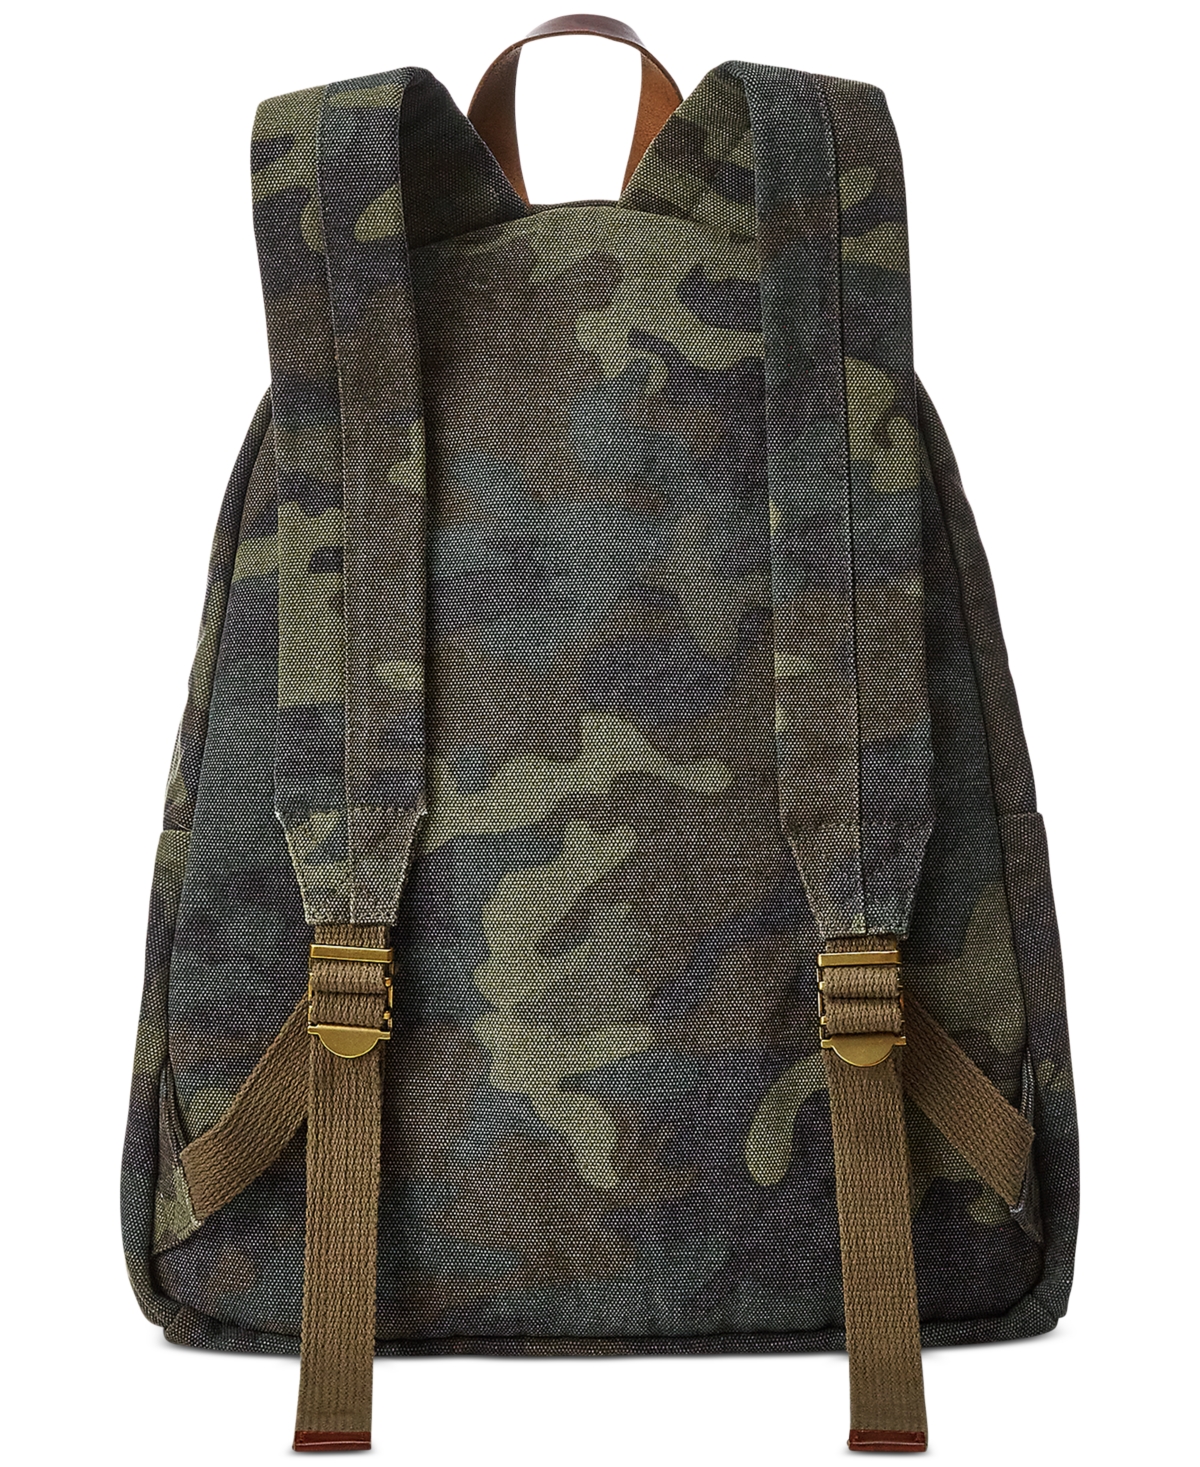 Shop Polo Ralph Lauren Men's Tiger-patch Camo Canvas Backpack